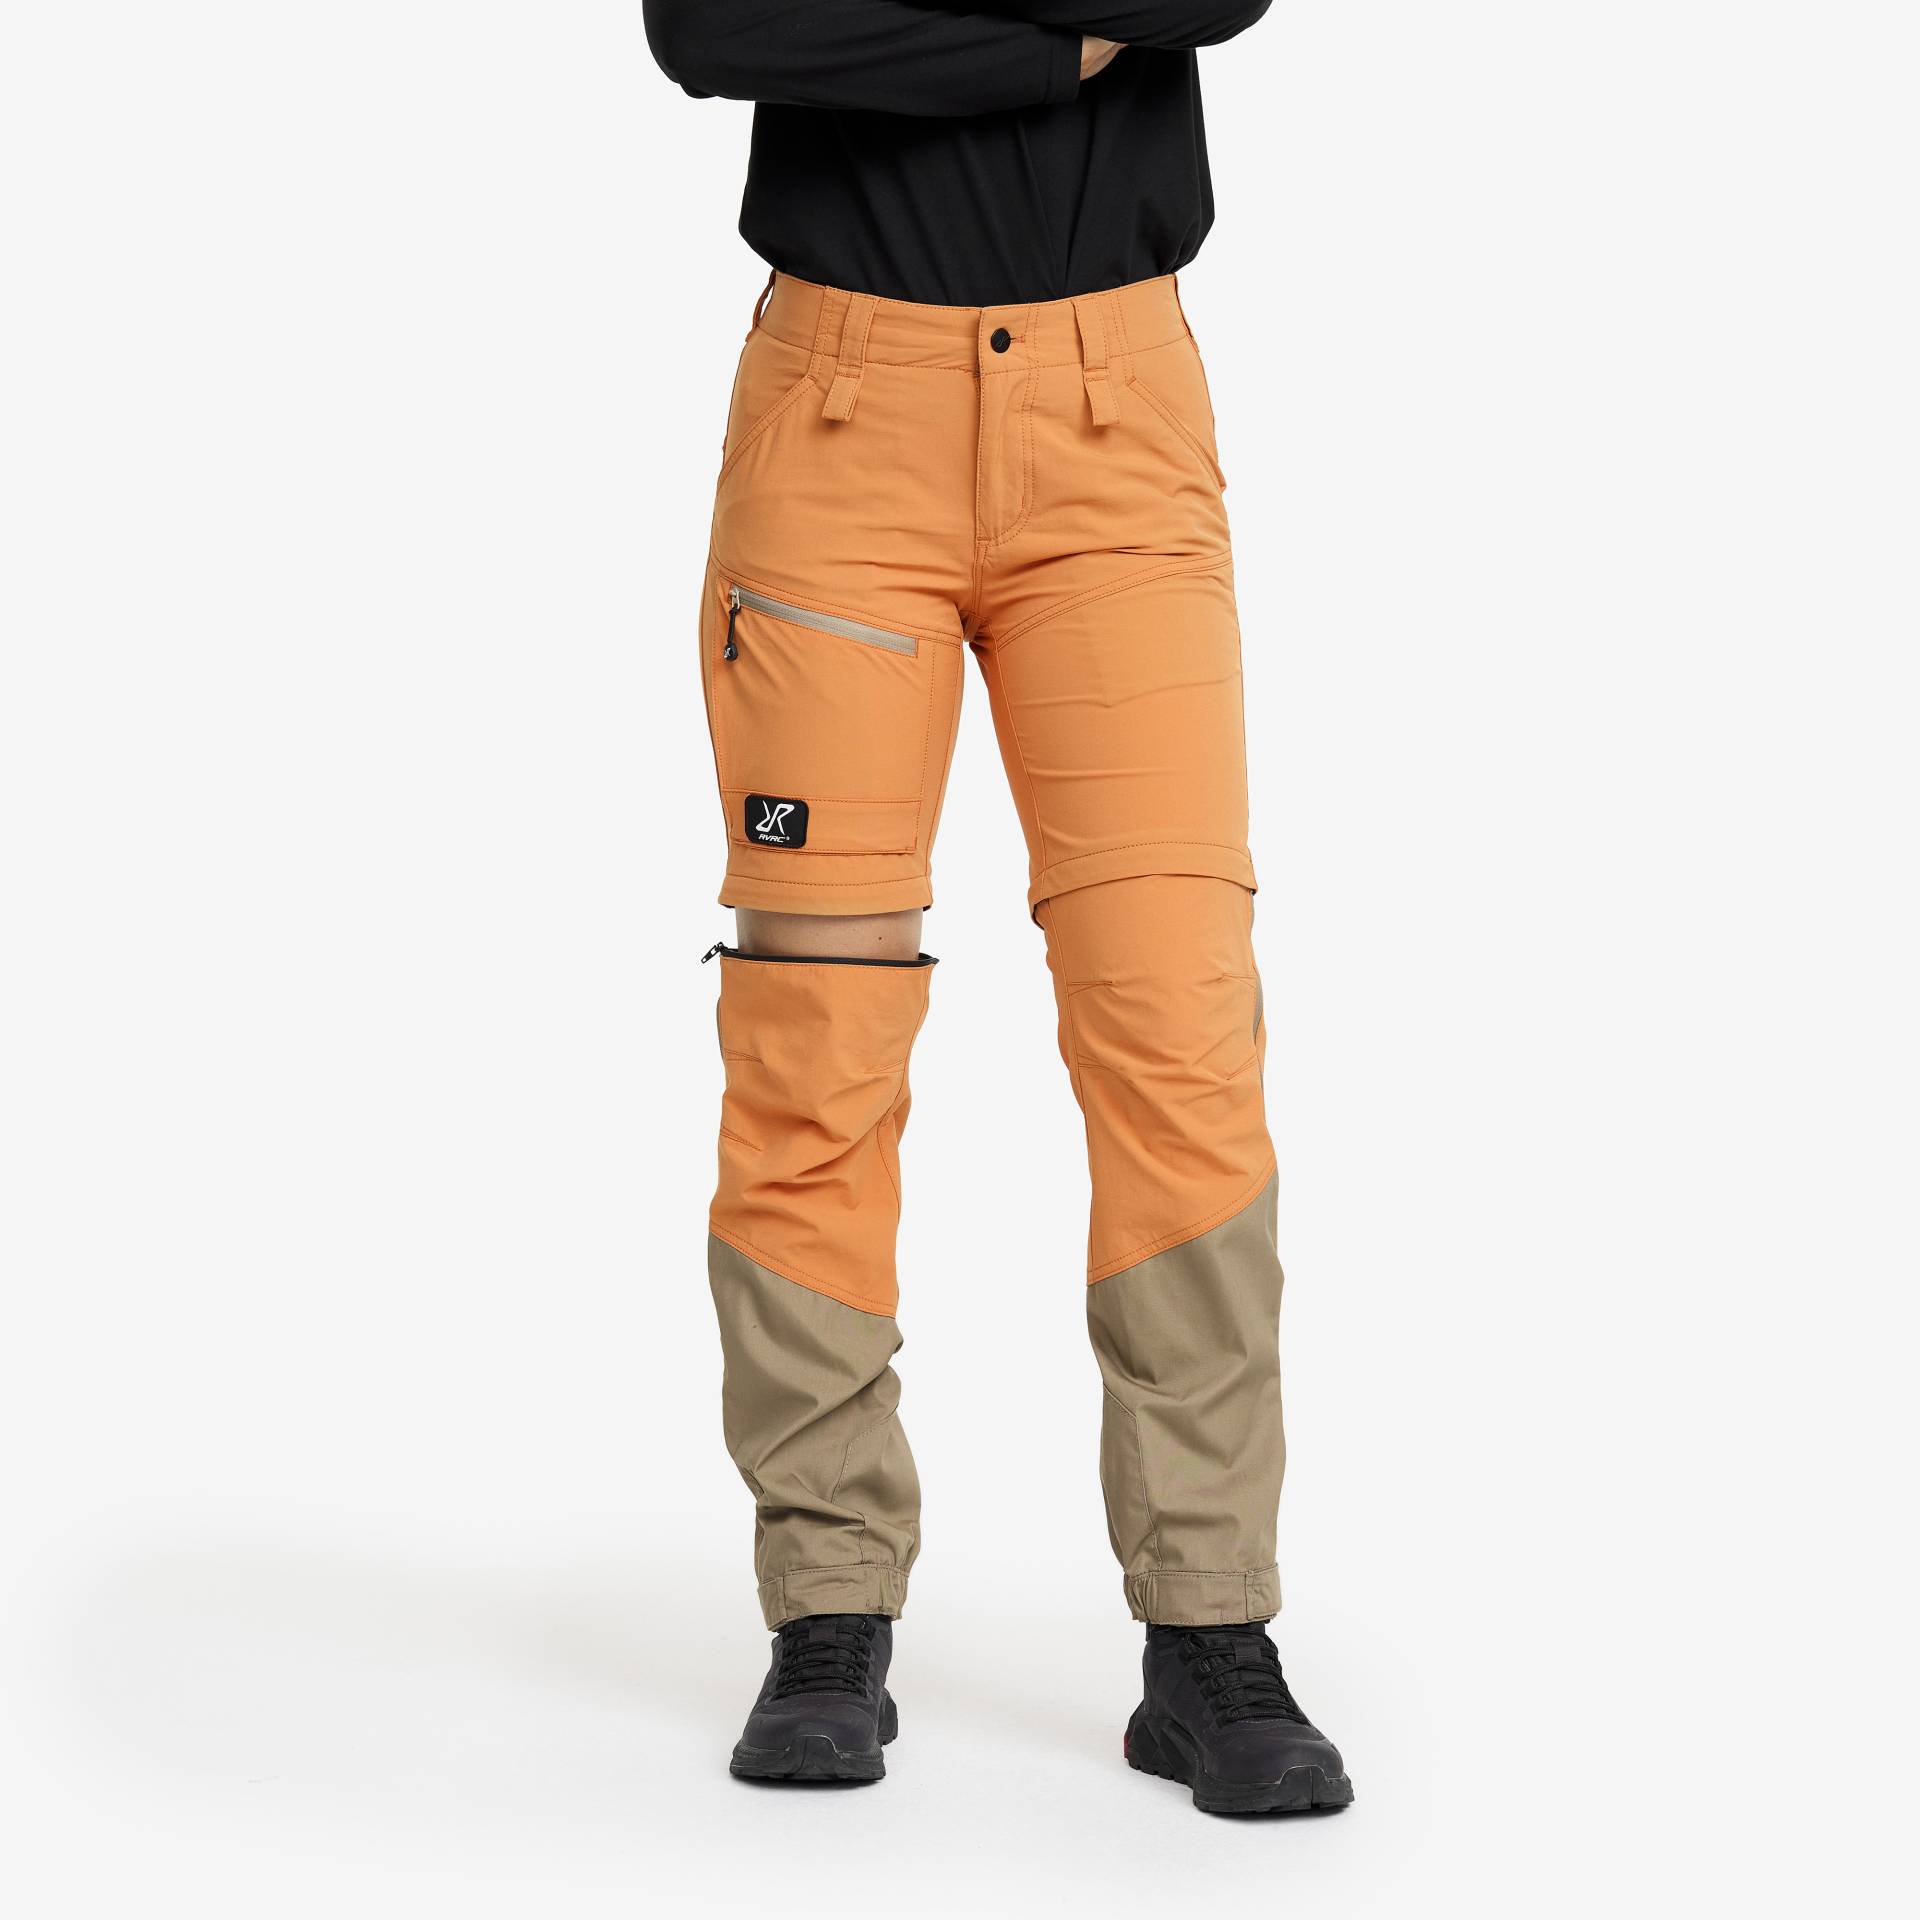 Range Pro Zip-off Pants Damen Caramel/Brindle, Größe:3XL - Zip-off-hosen von RevolutionRace